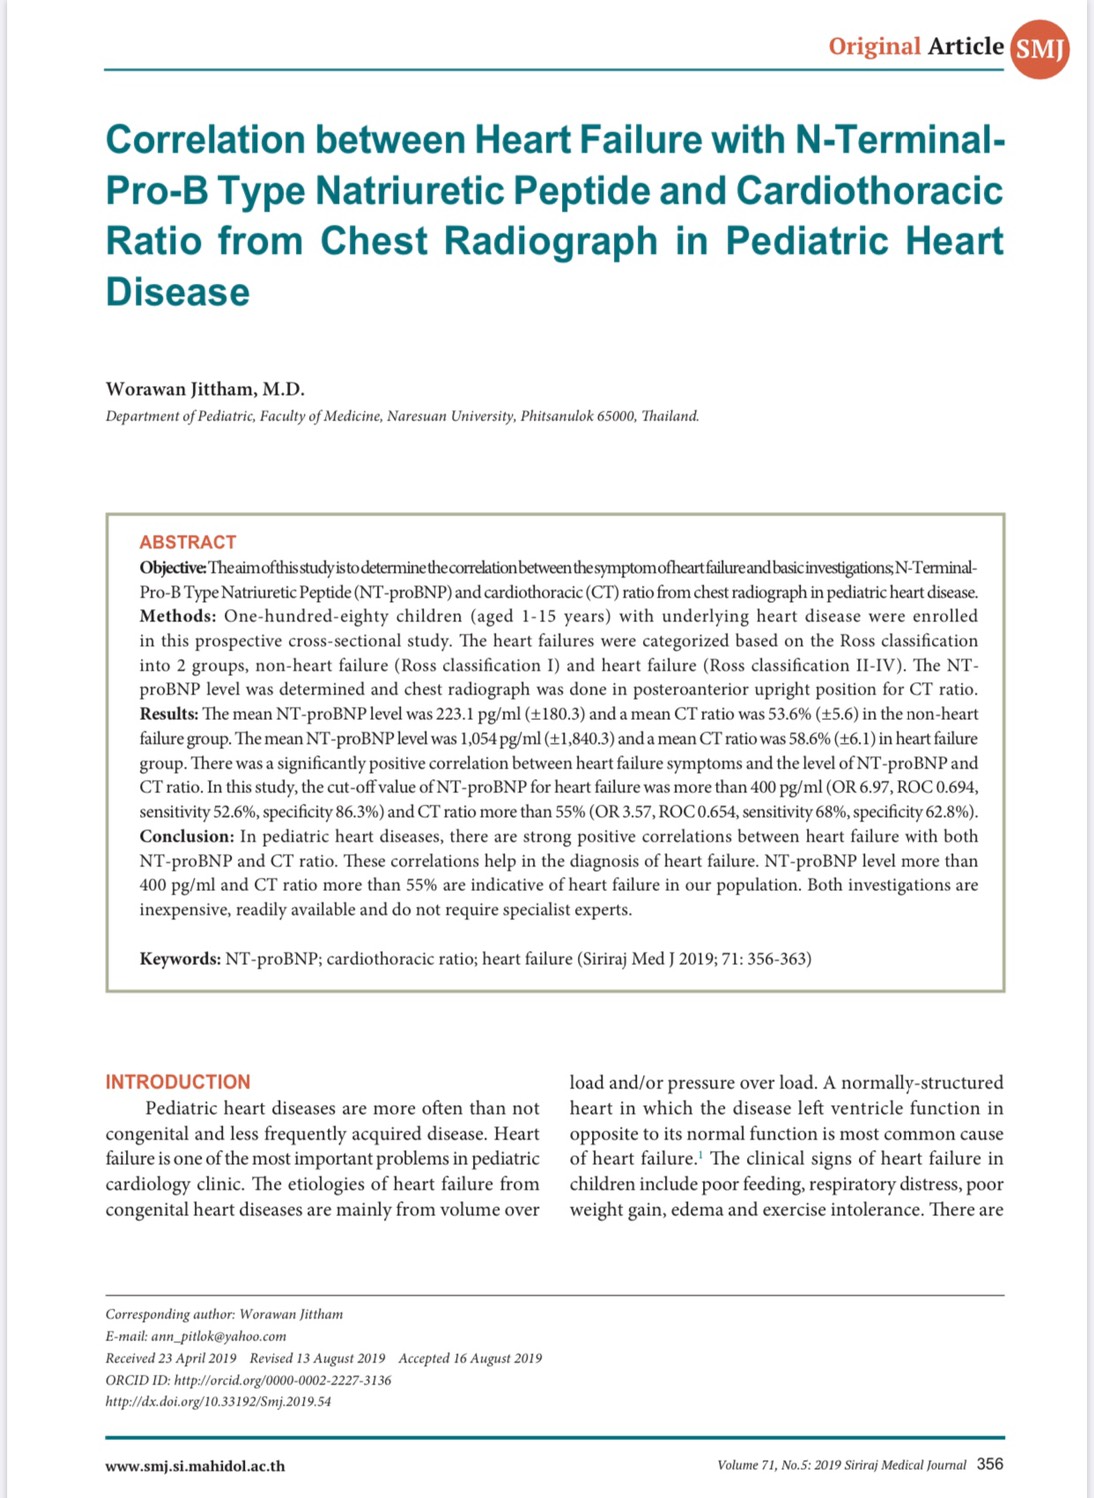 ความสัมพันธ์ระหว่างภาวะหัวใจล้มเหลวกับระดับ NT-proBNP ในเลือดและอัตราส่วนของ Cardiothoracic ratio ภาพรังสีปอดในผู้ป่วยเด็กโรคหัวใจ